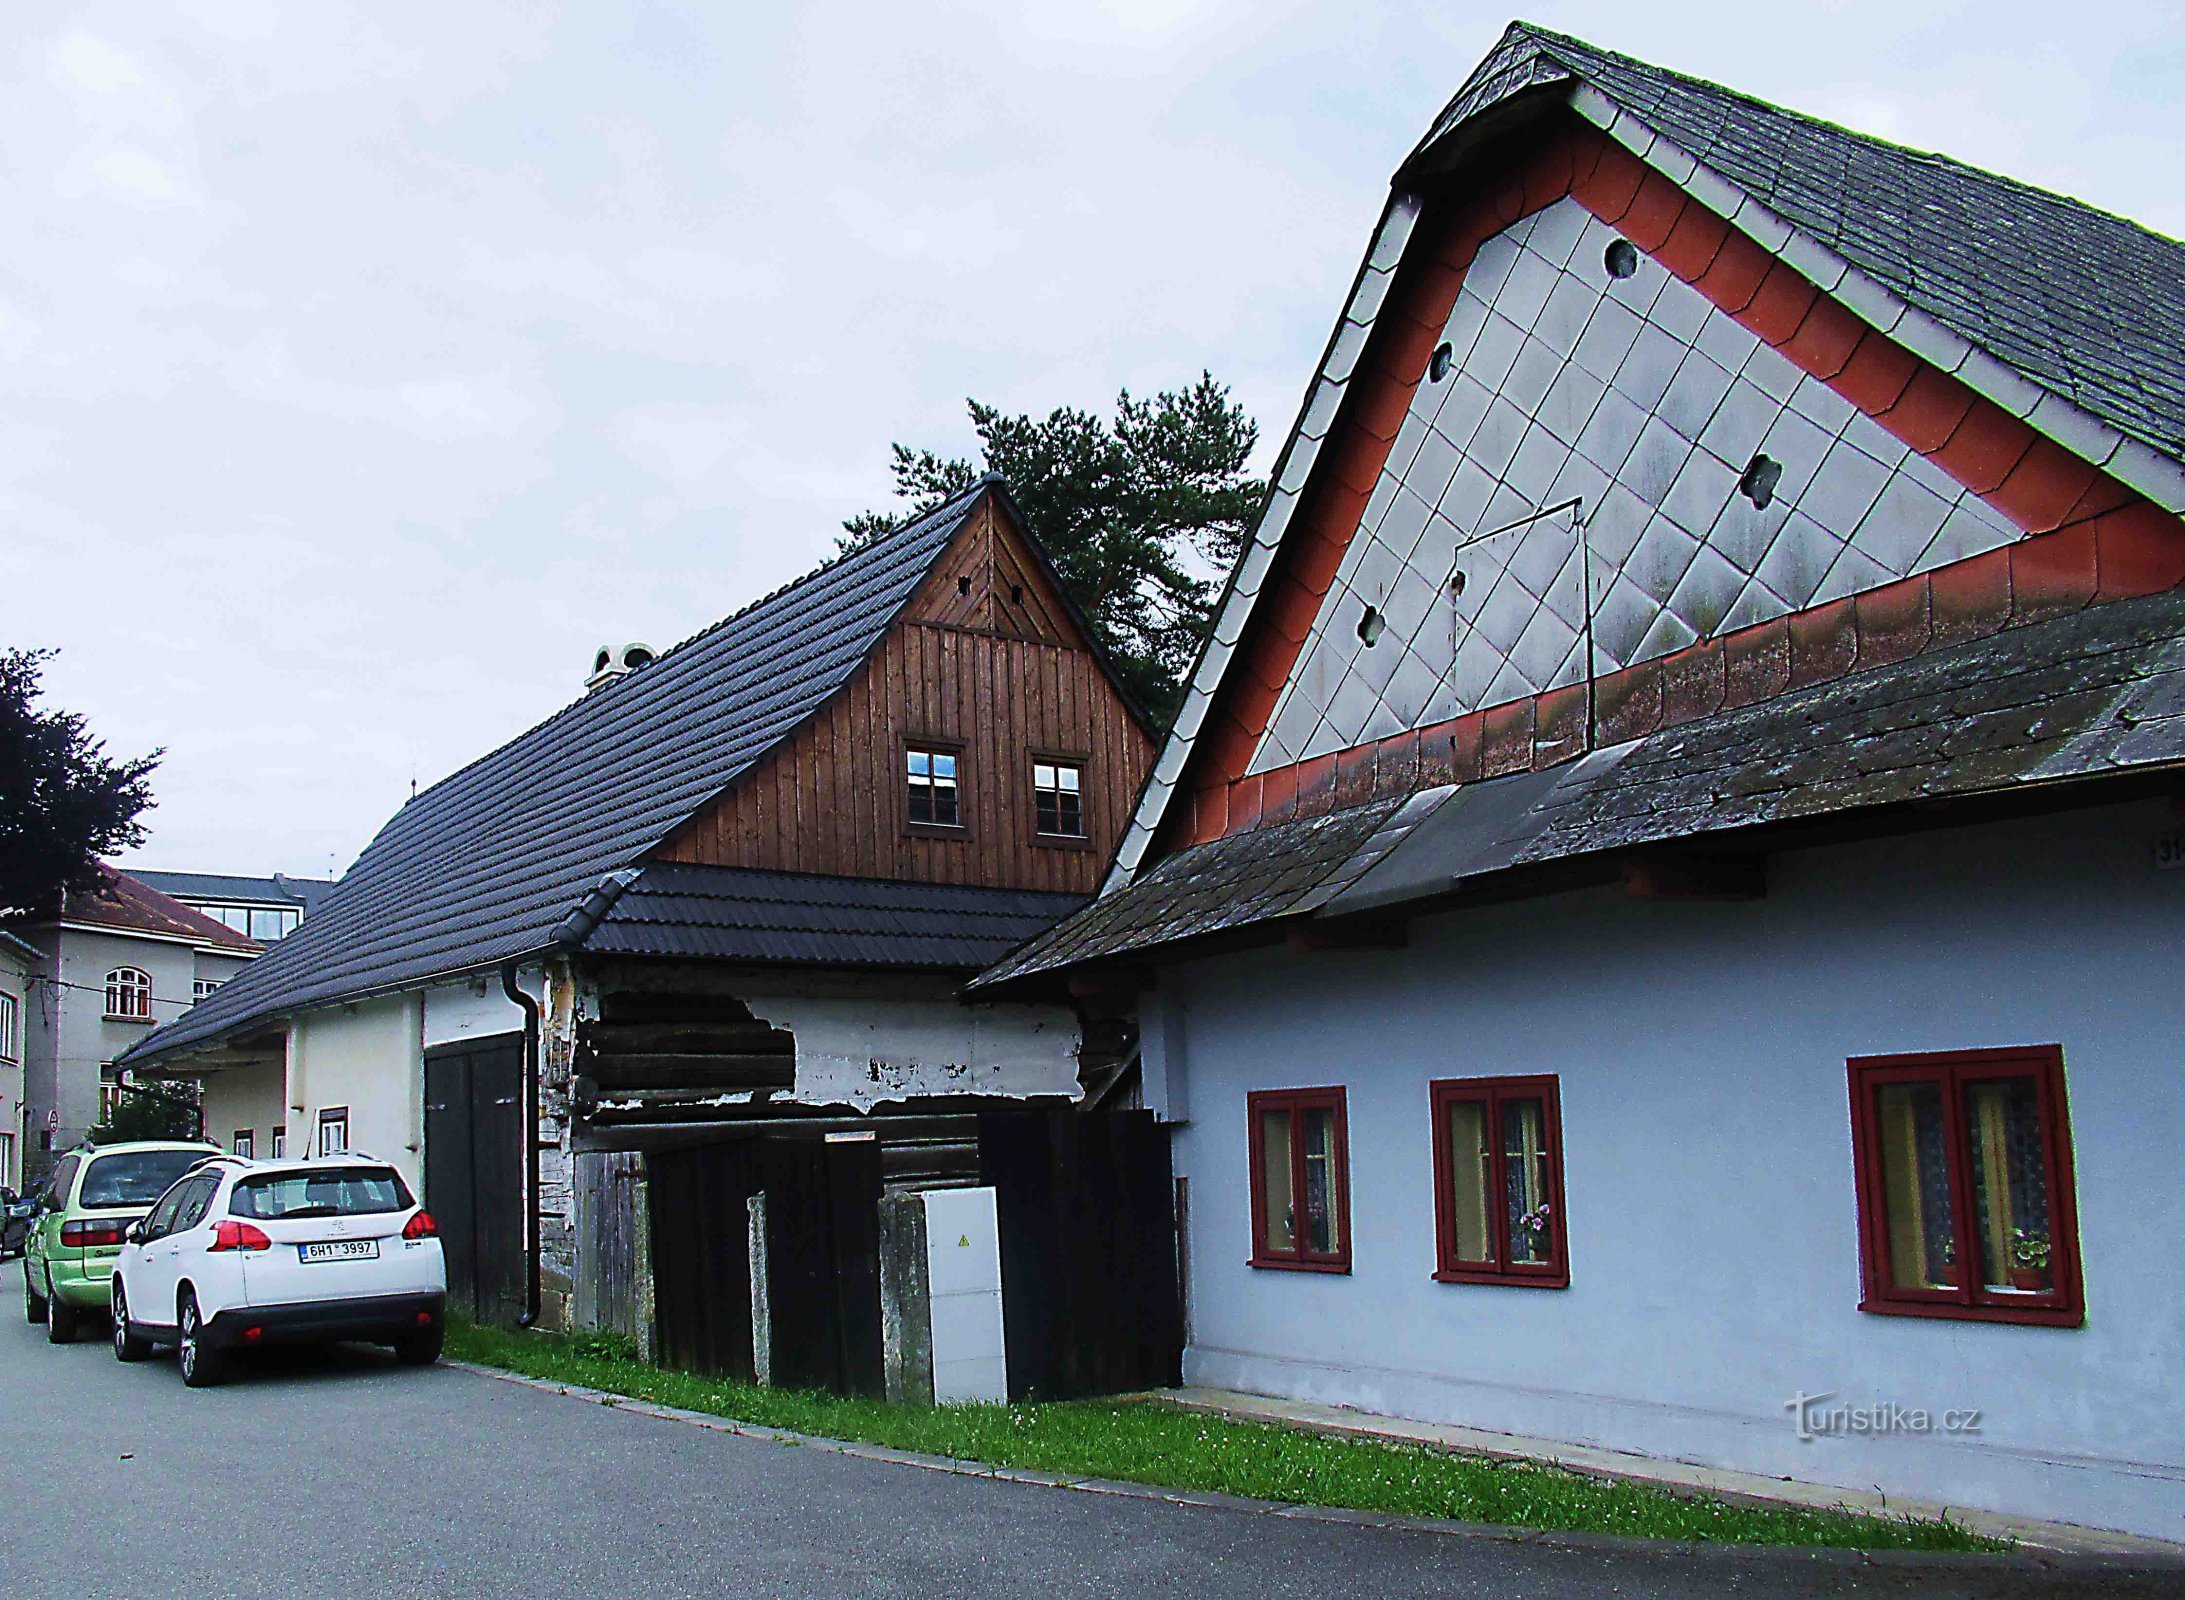 Maisons de tisserands - bâtiments folkloriques du XIXe siècle à Ústí nad Orlicí